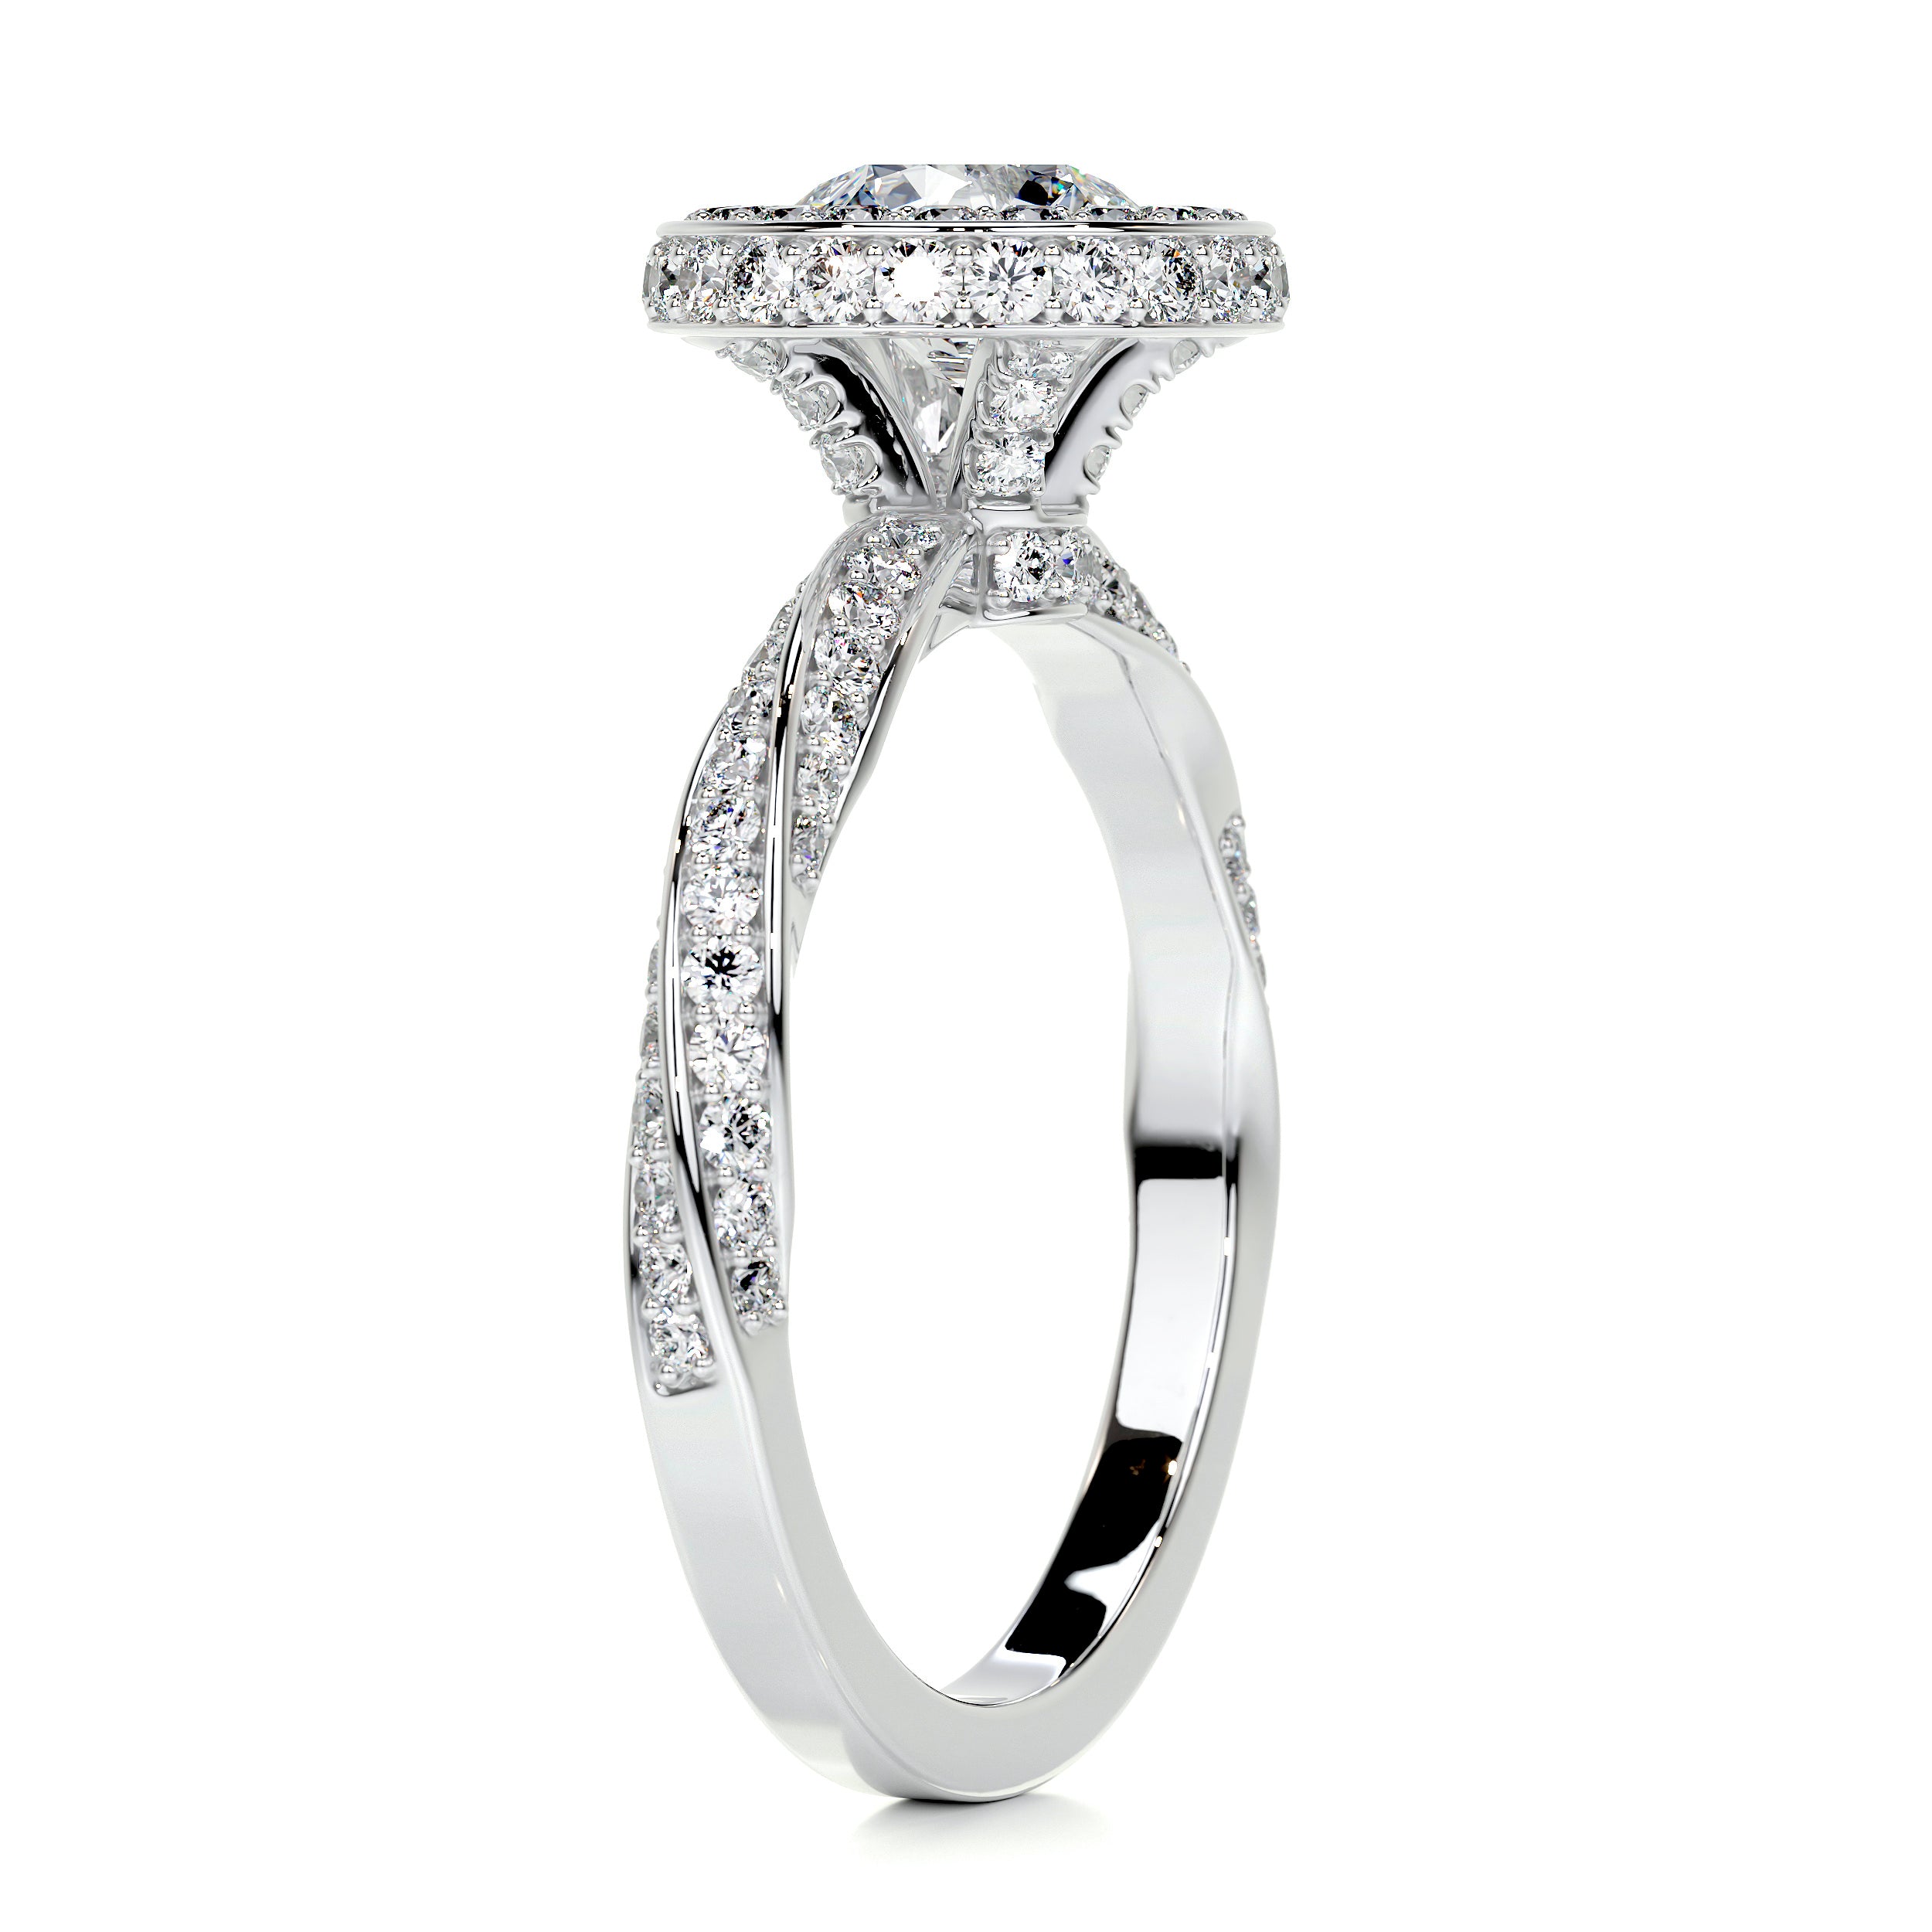 Sarina Diamond Engagement Ring   (1.7 Carat) -14K White Gold